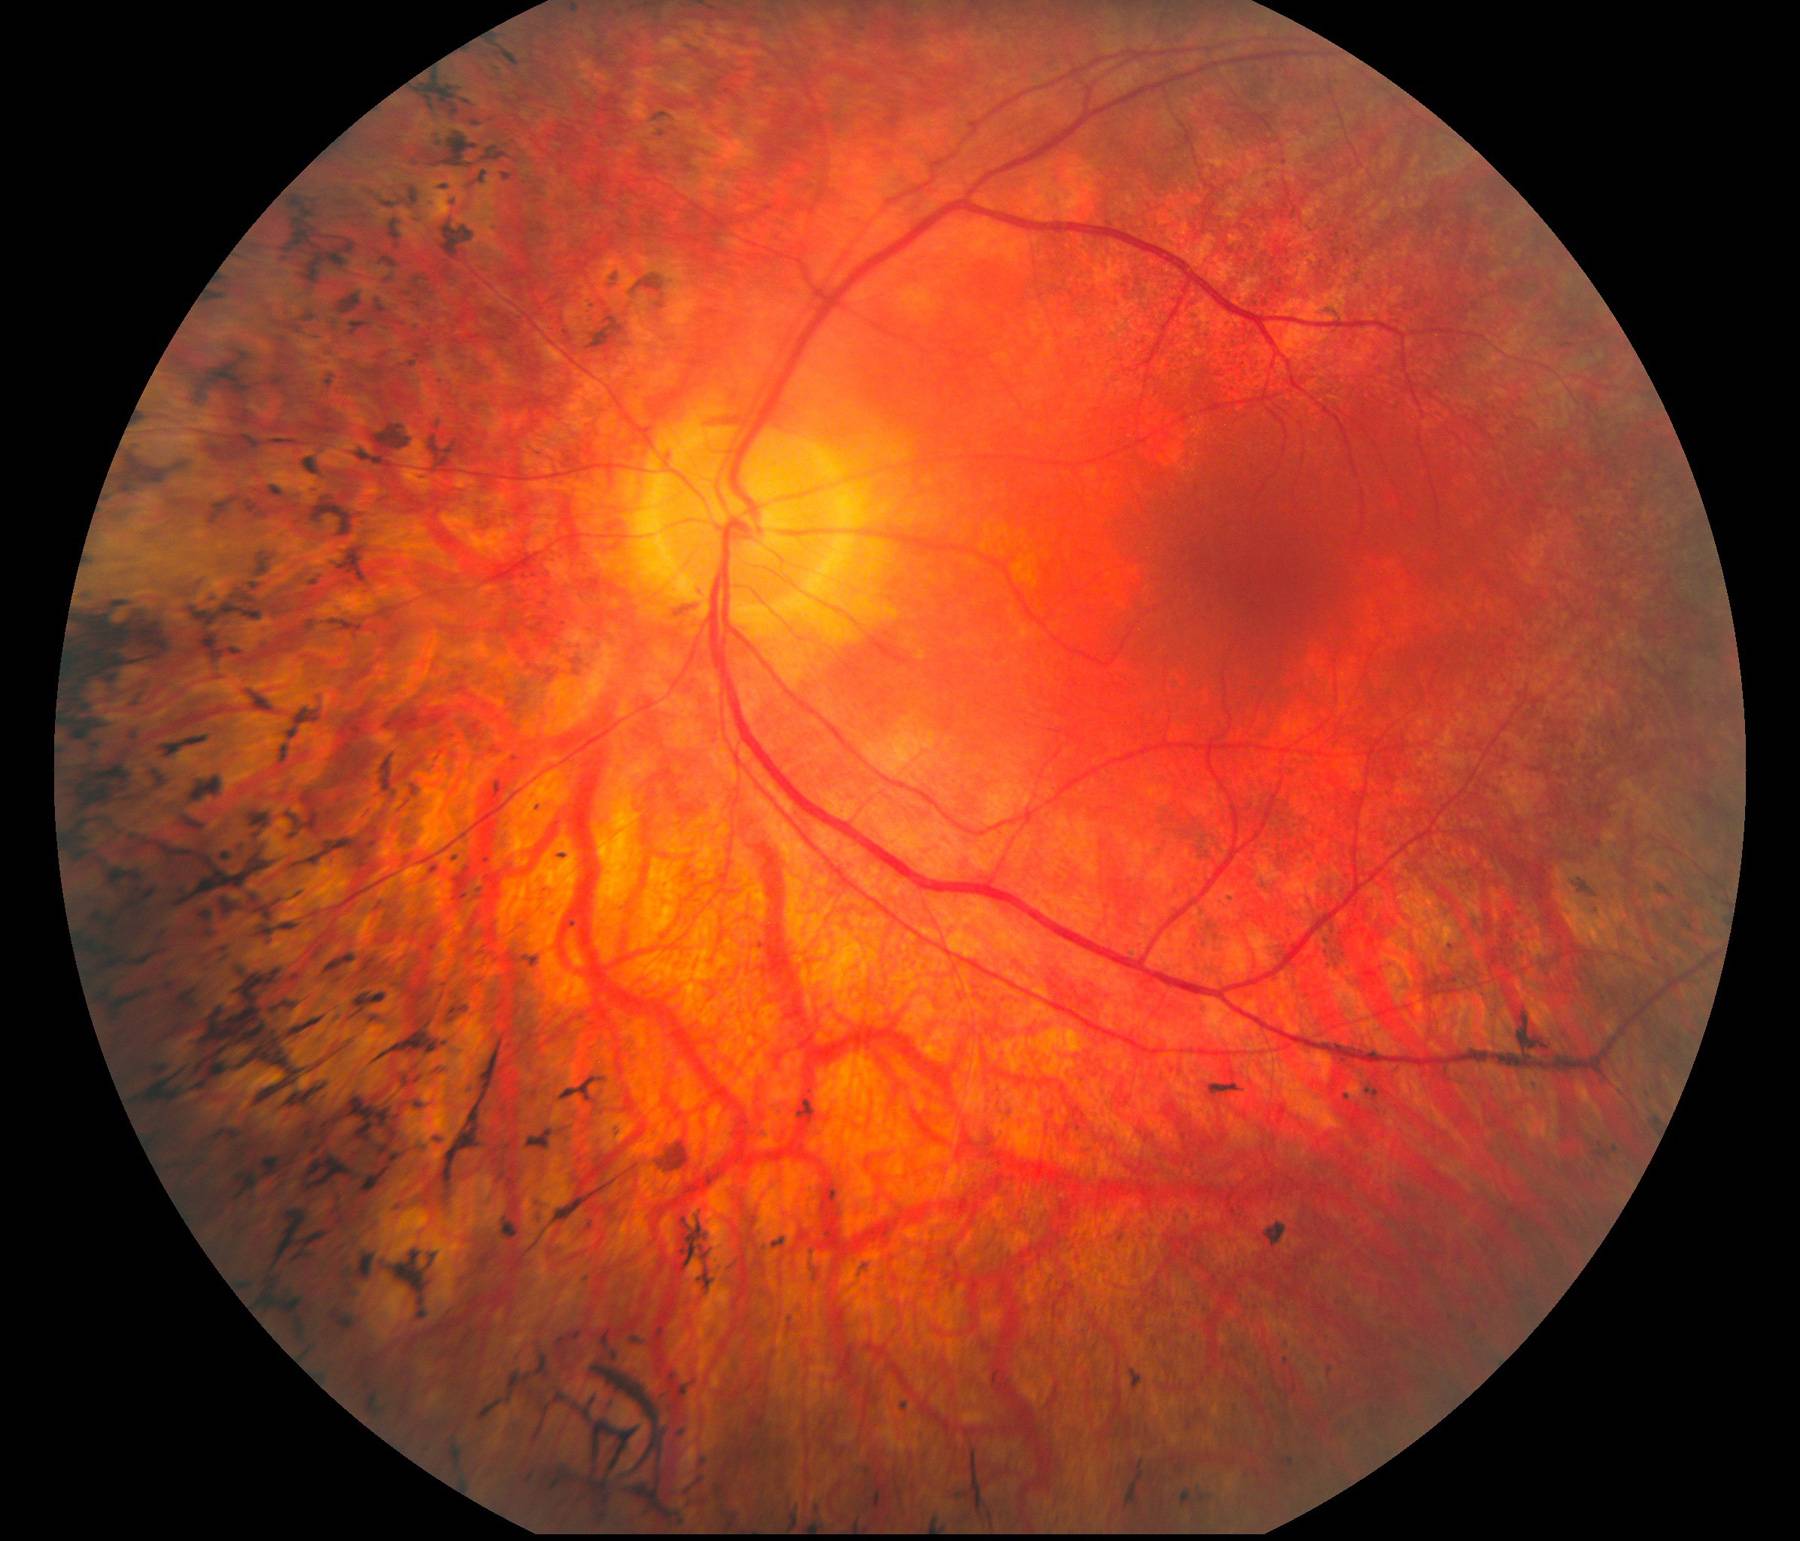 Ретинит - воспаление сетчатки глаза, лечение, причины, симптомы